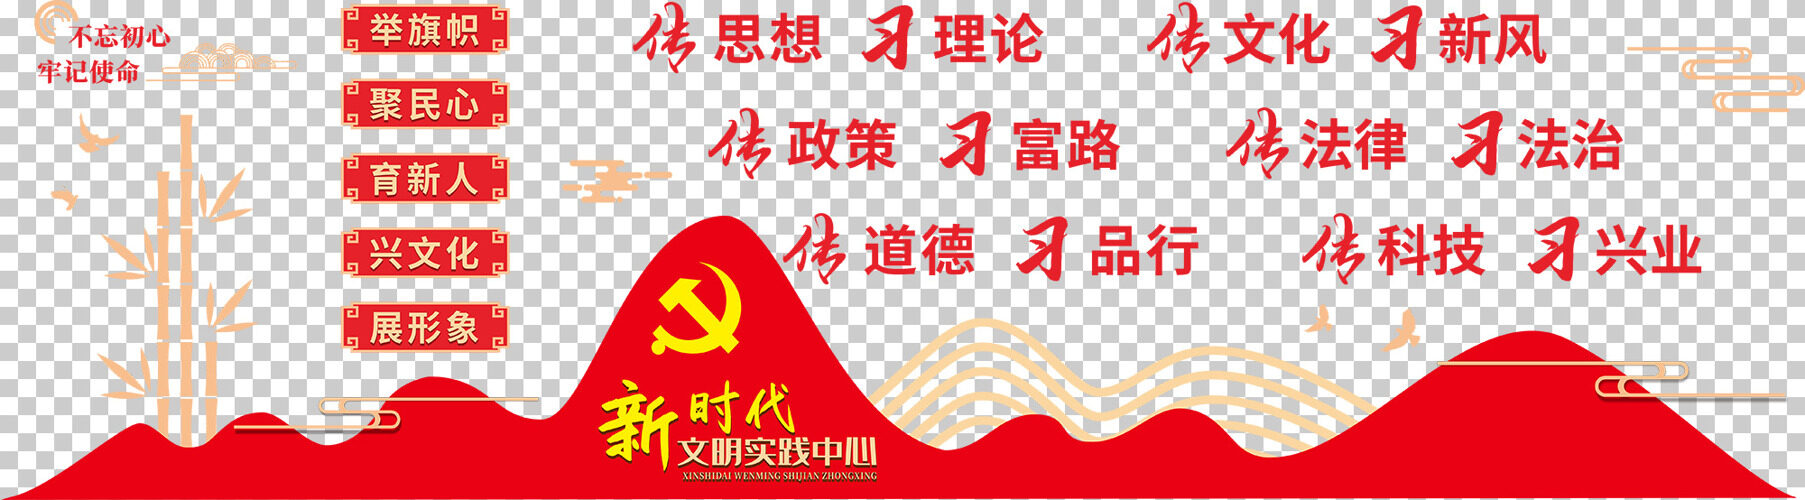 新时代文明实践中心六传六习党建文化背景墙 